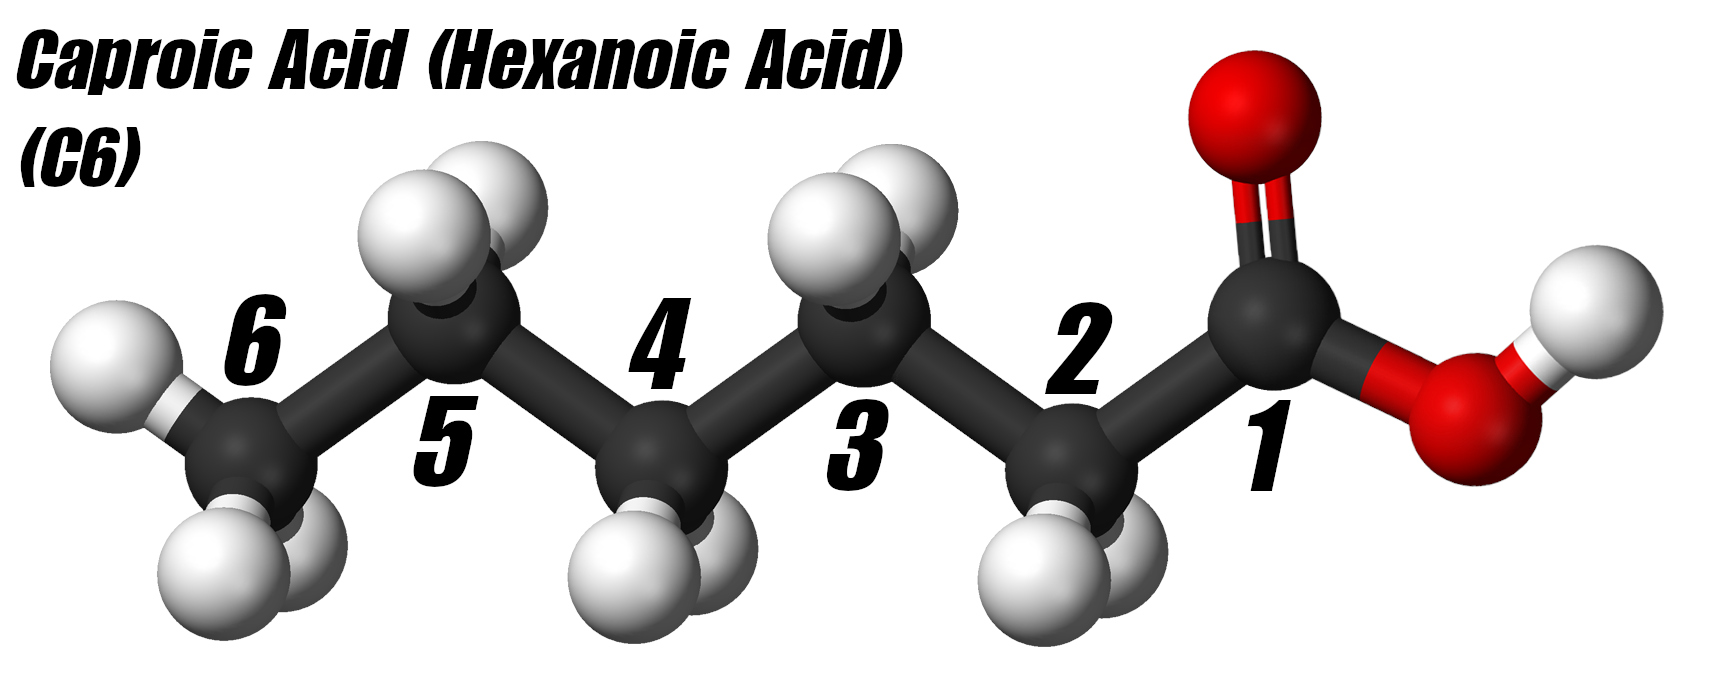 Hexanoic Acid